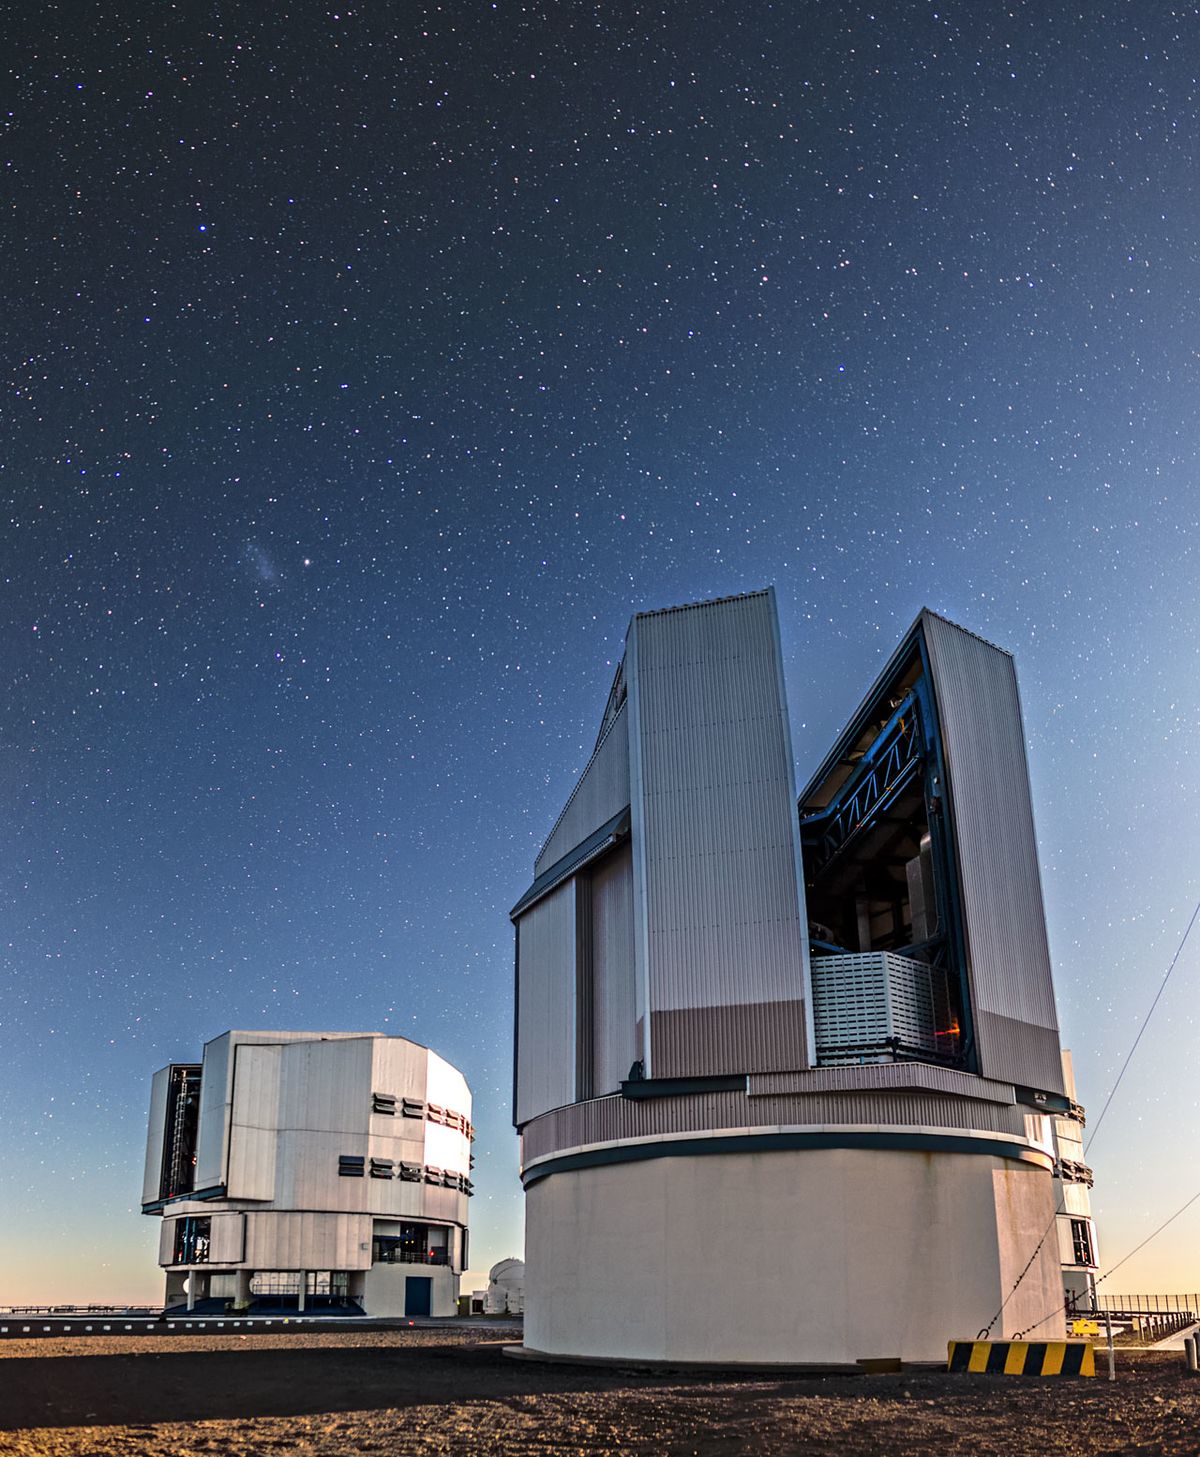 Soustava teleskopů VLT